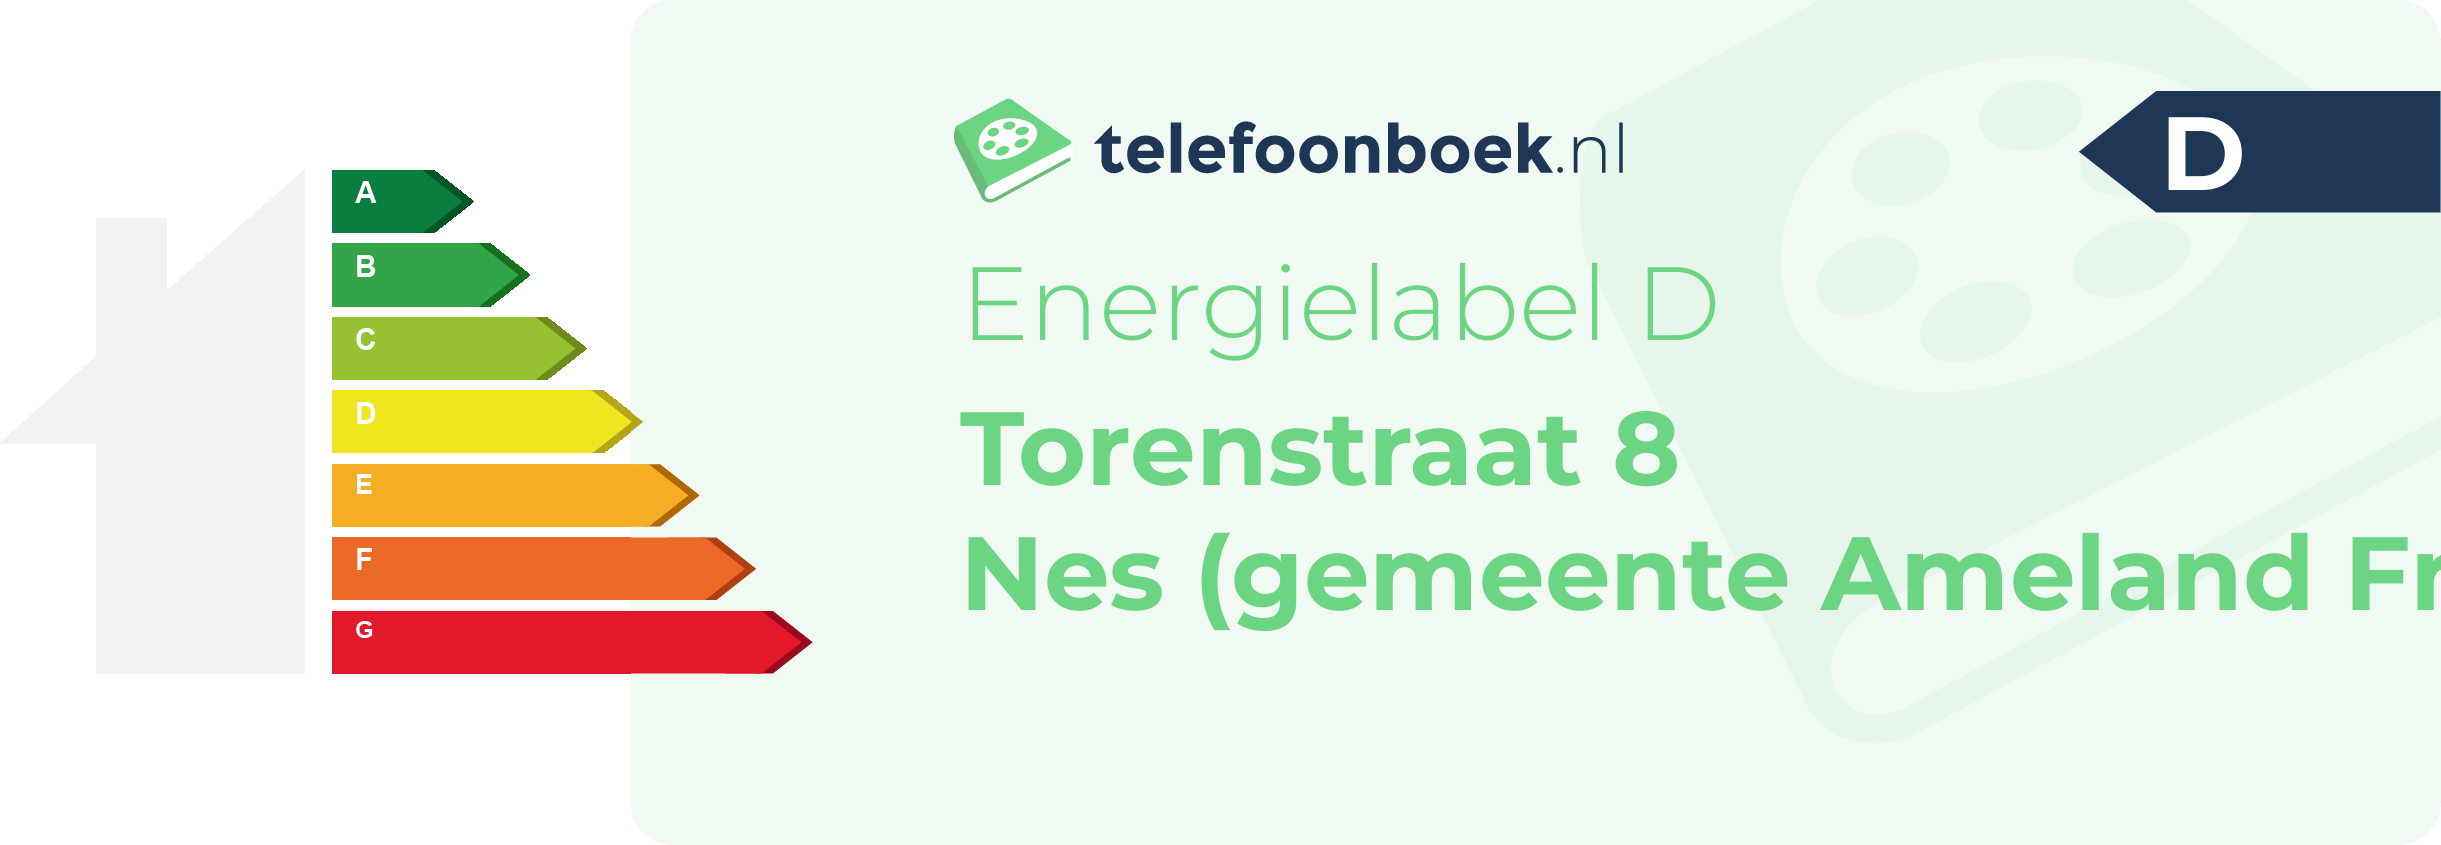 Energielabel Torenstraat 8 Nes (gemeente Ameland Friesland)